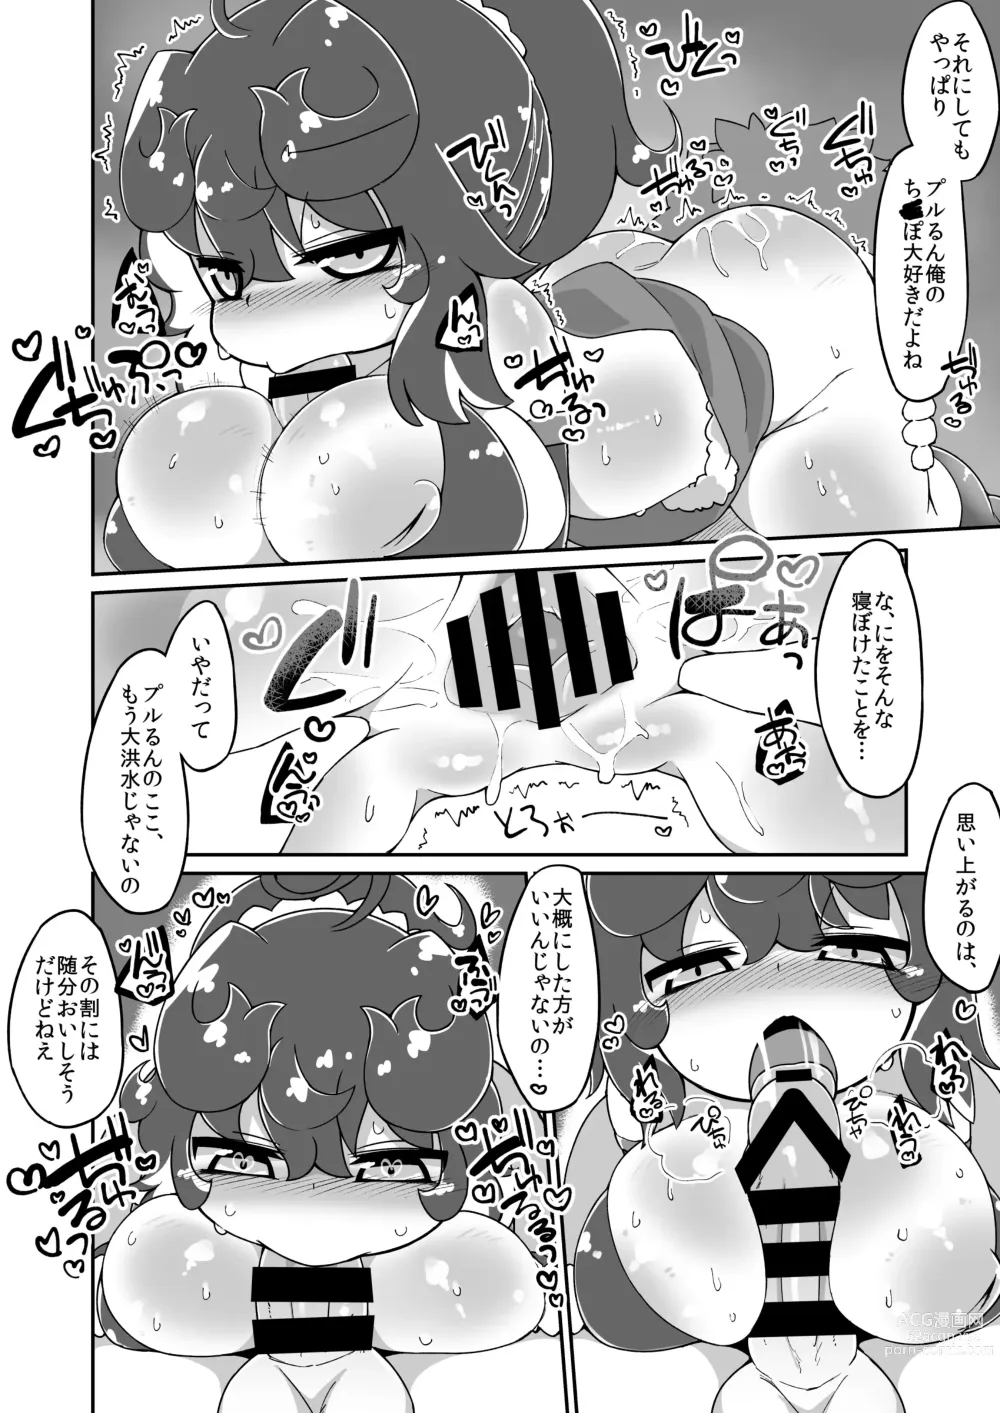 Page 2 of doujinshi Christmas Prune Ecchi Manga